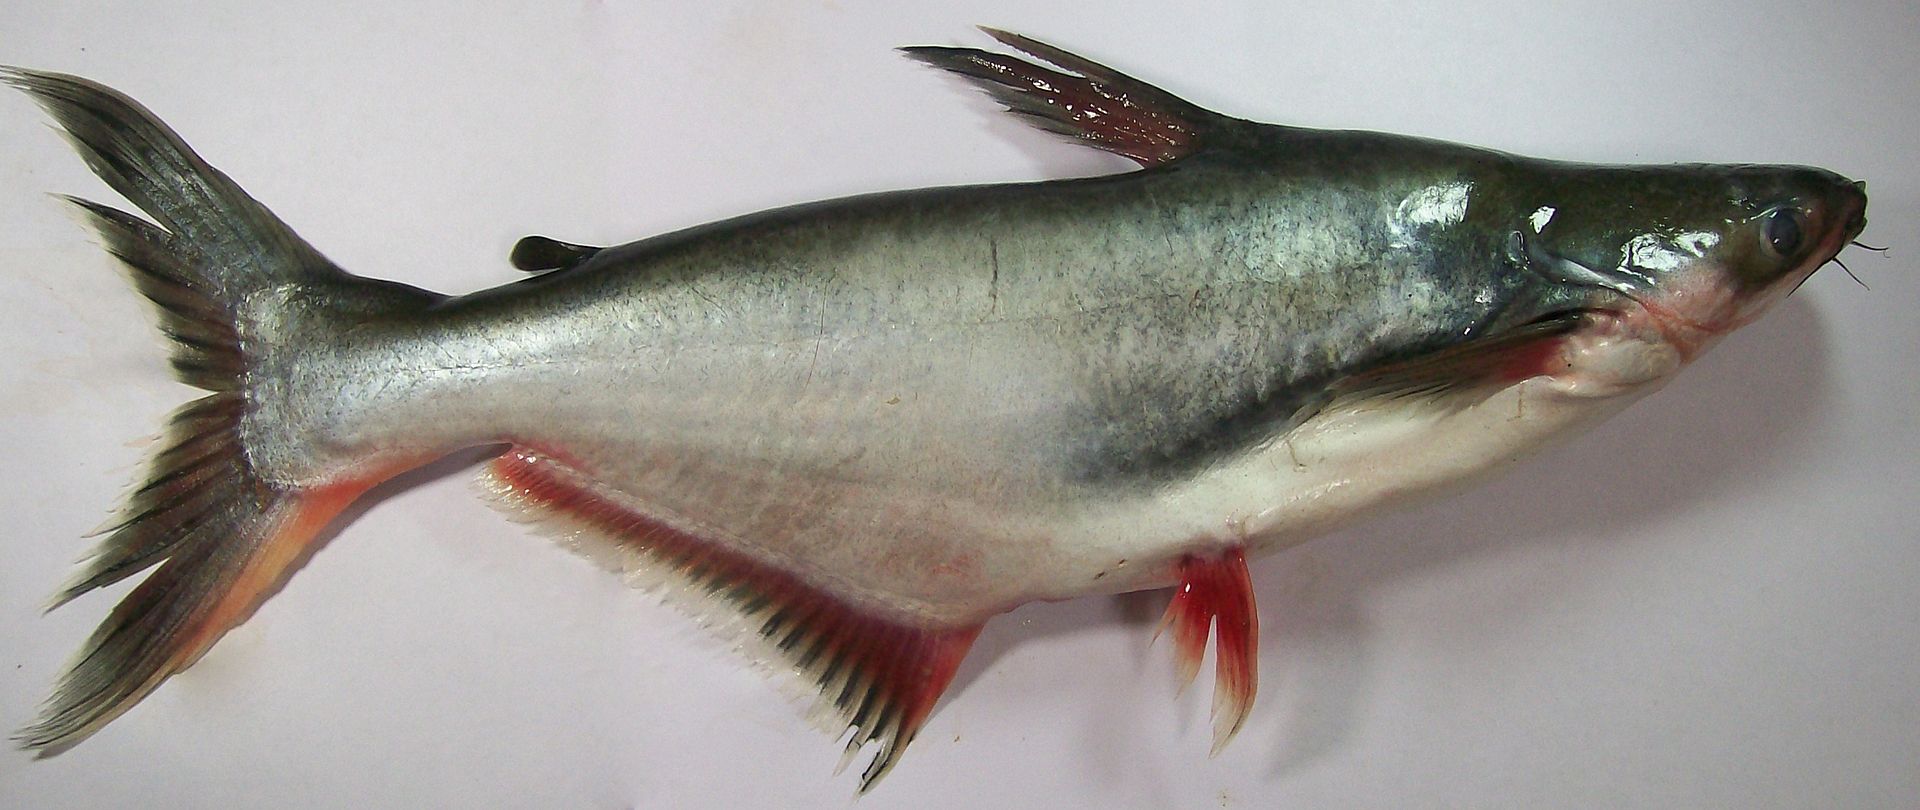 Pangasius ist eine Fischart aus der Familie der Welse, die in den Süßwassergebieten Ostasiens lebt. Es ist am stärksten in den Flüssen Chao Phrai und Mekong konzentriert - Kimmy Farm Vietnam